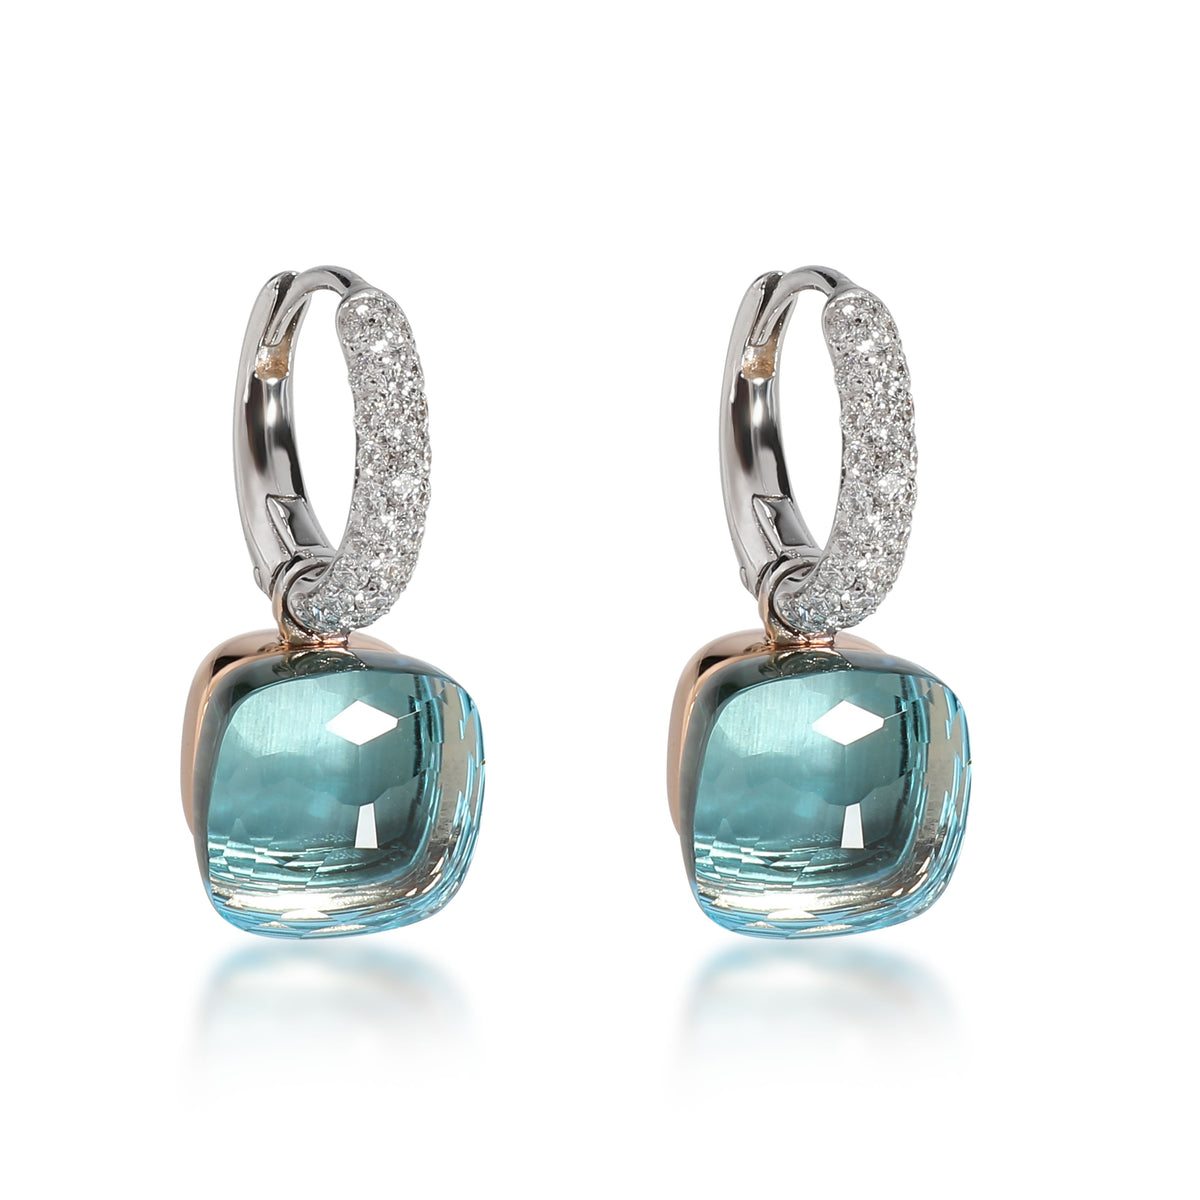 Pomellato Nudo Blue Topaz Diamond Earrings in 18K White & Rose Gold 0.55 CTW